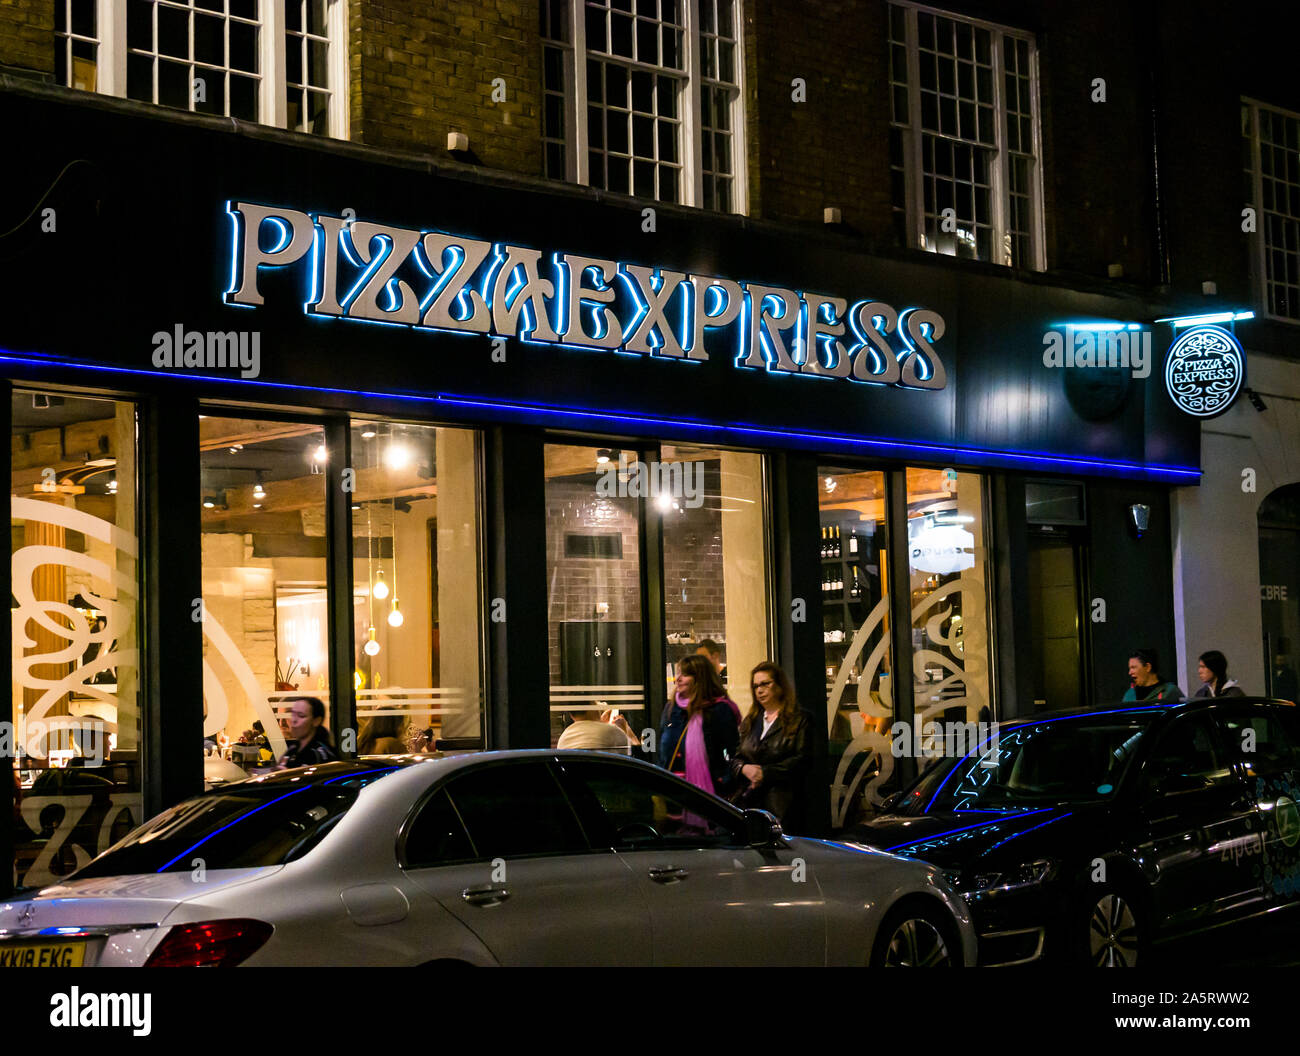 Pizza Express ristorante finestra anteriore illuminata di notte, Londra, Inghilterra, Regno Unito Foto Stock